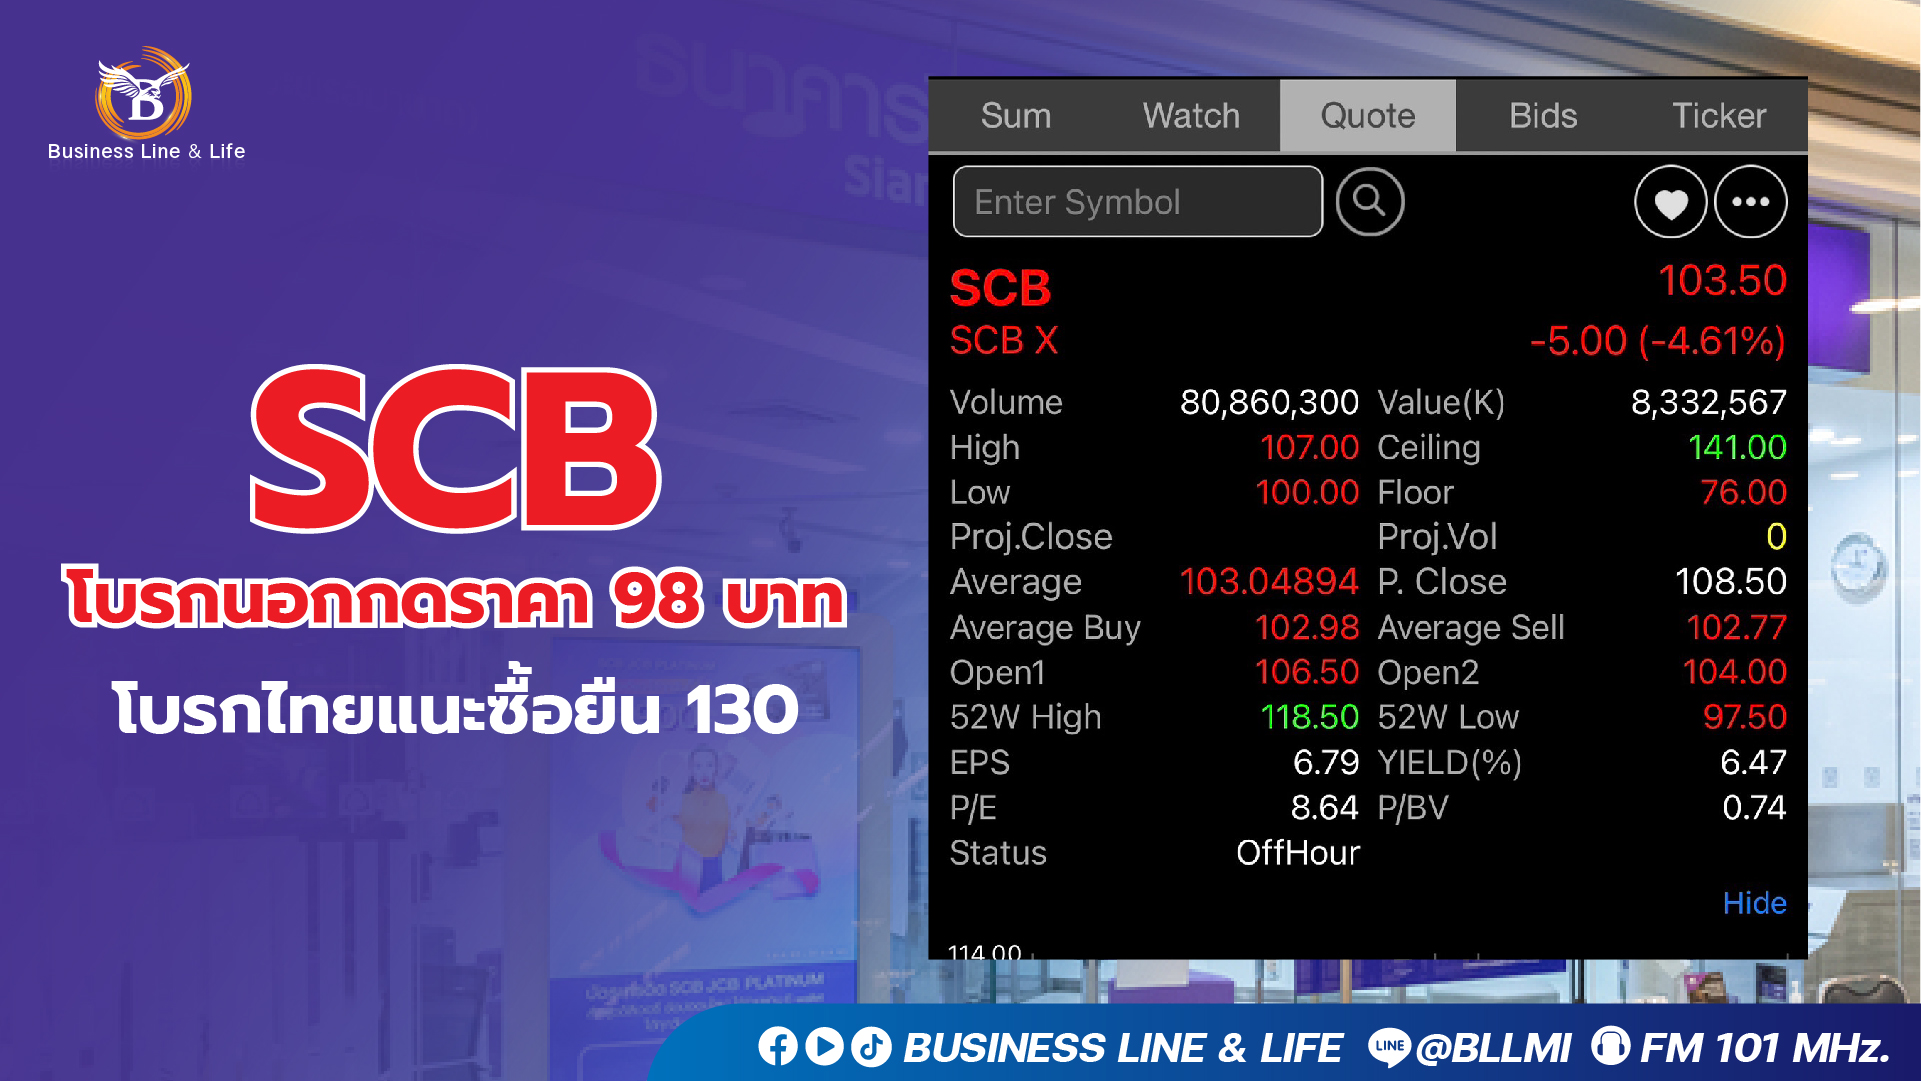 SCB โบรกนอกกดราคา 98 บาท โบรกไทยแนะซื้อยืน 130